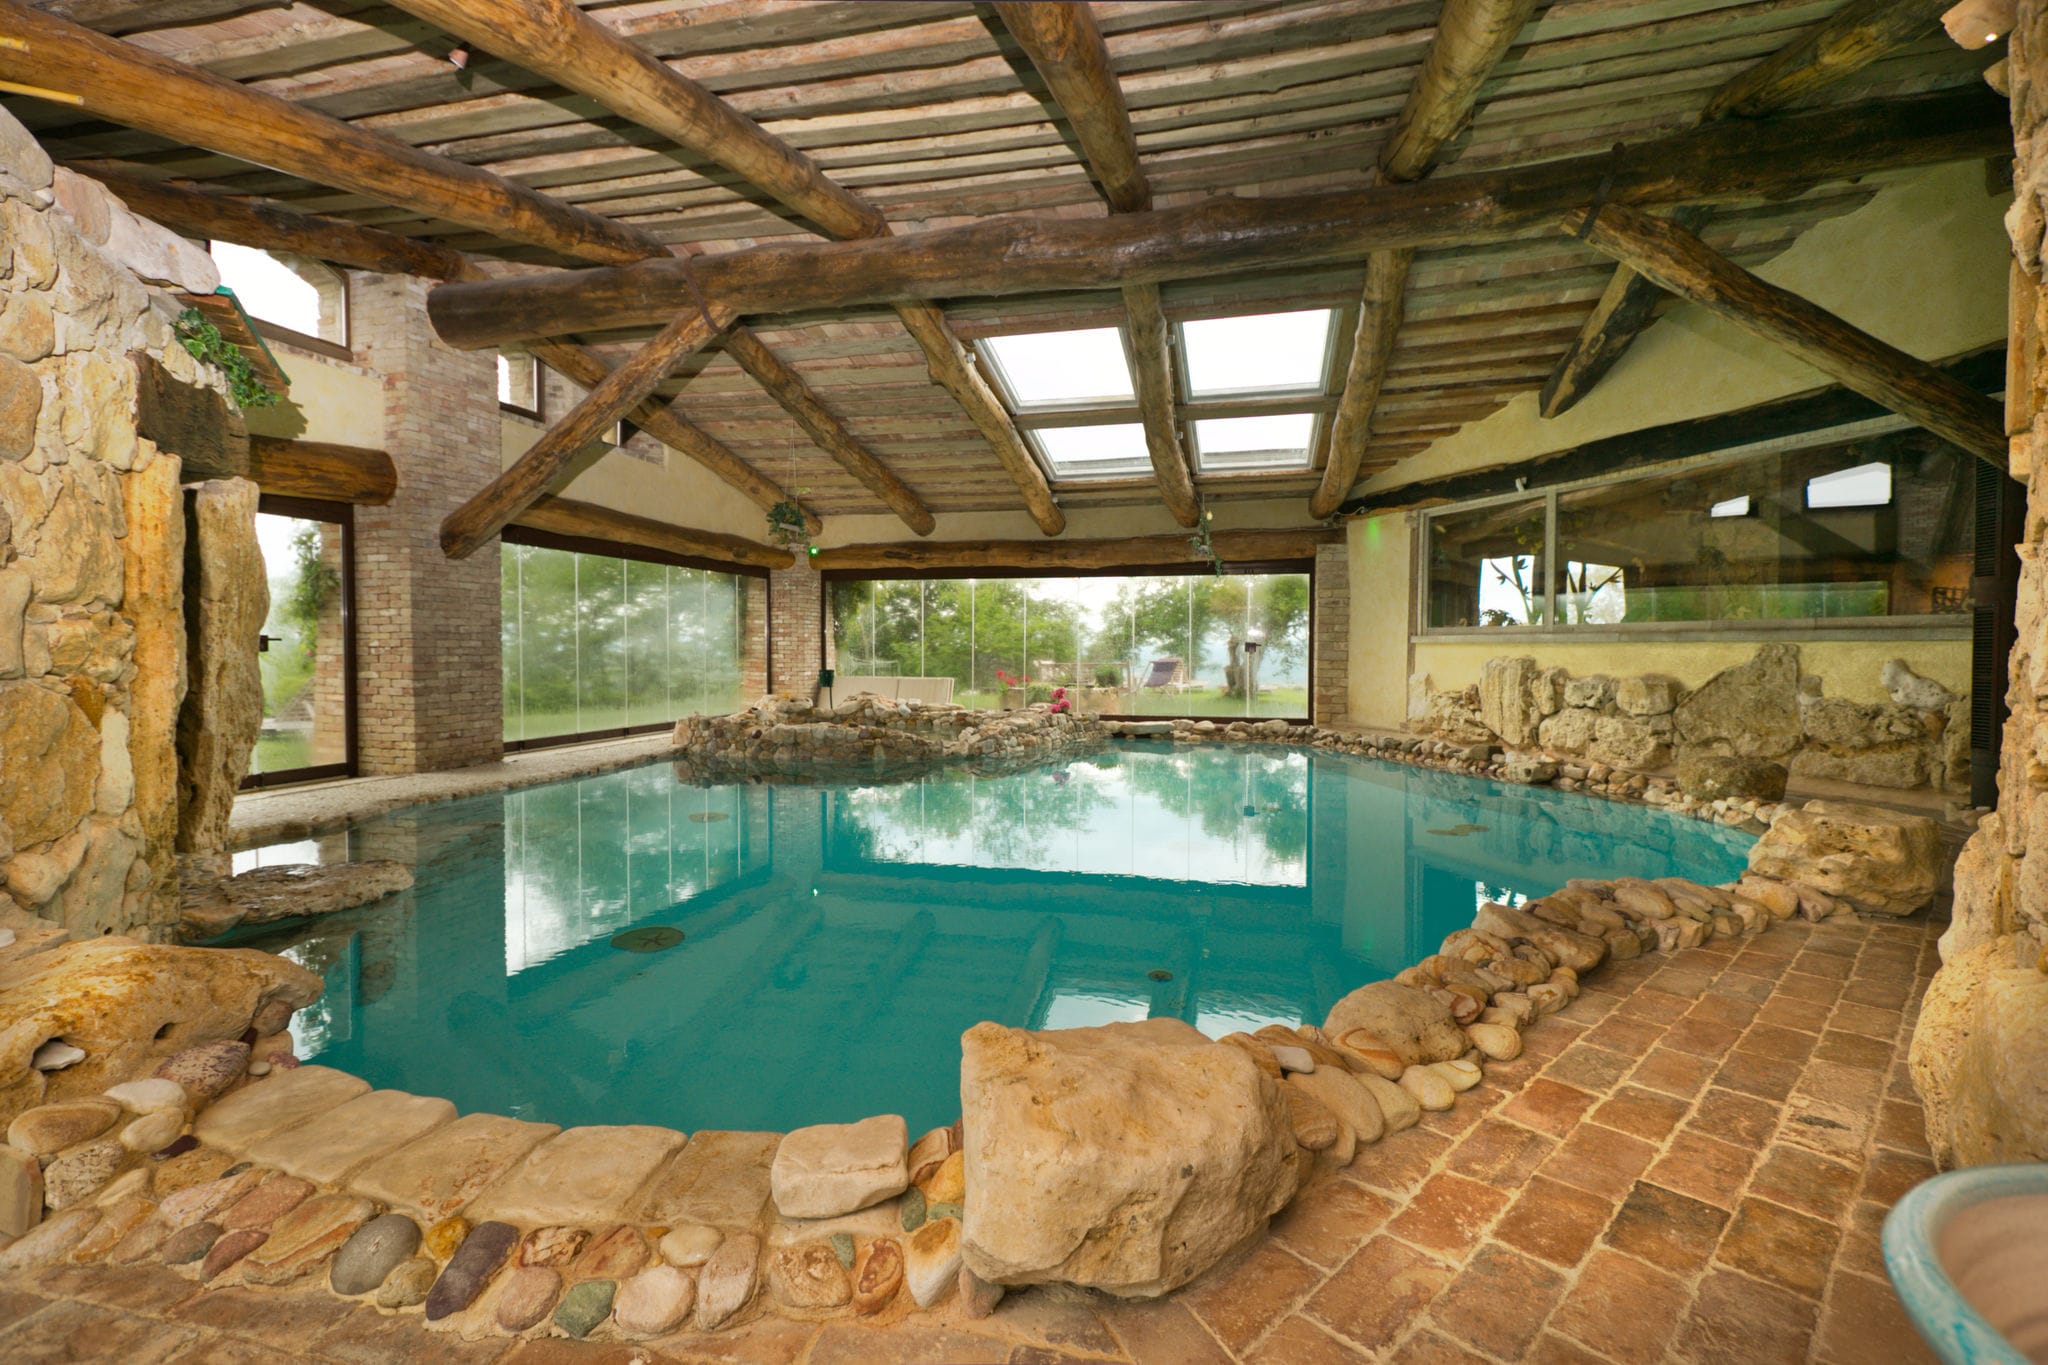 Villa exotique à Guardea en Italie avec piscine privée